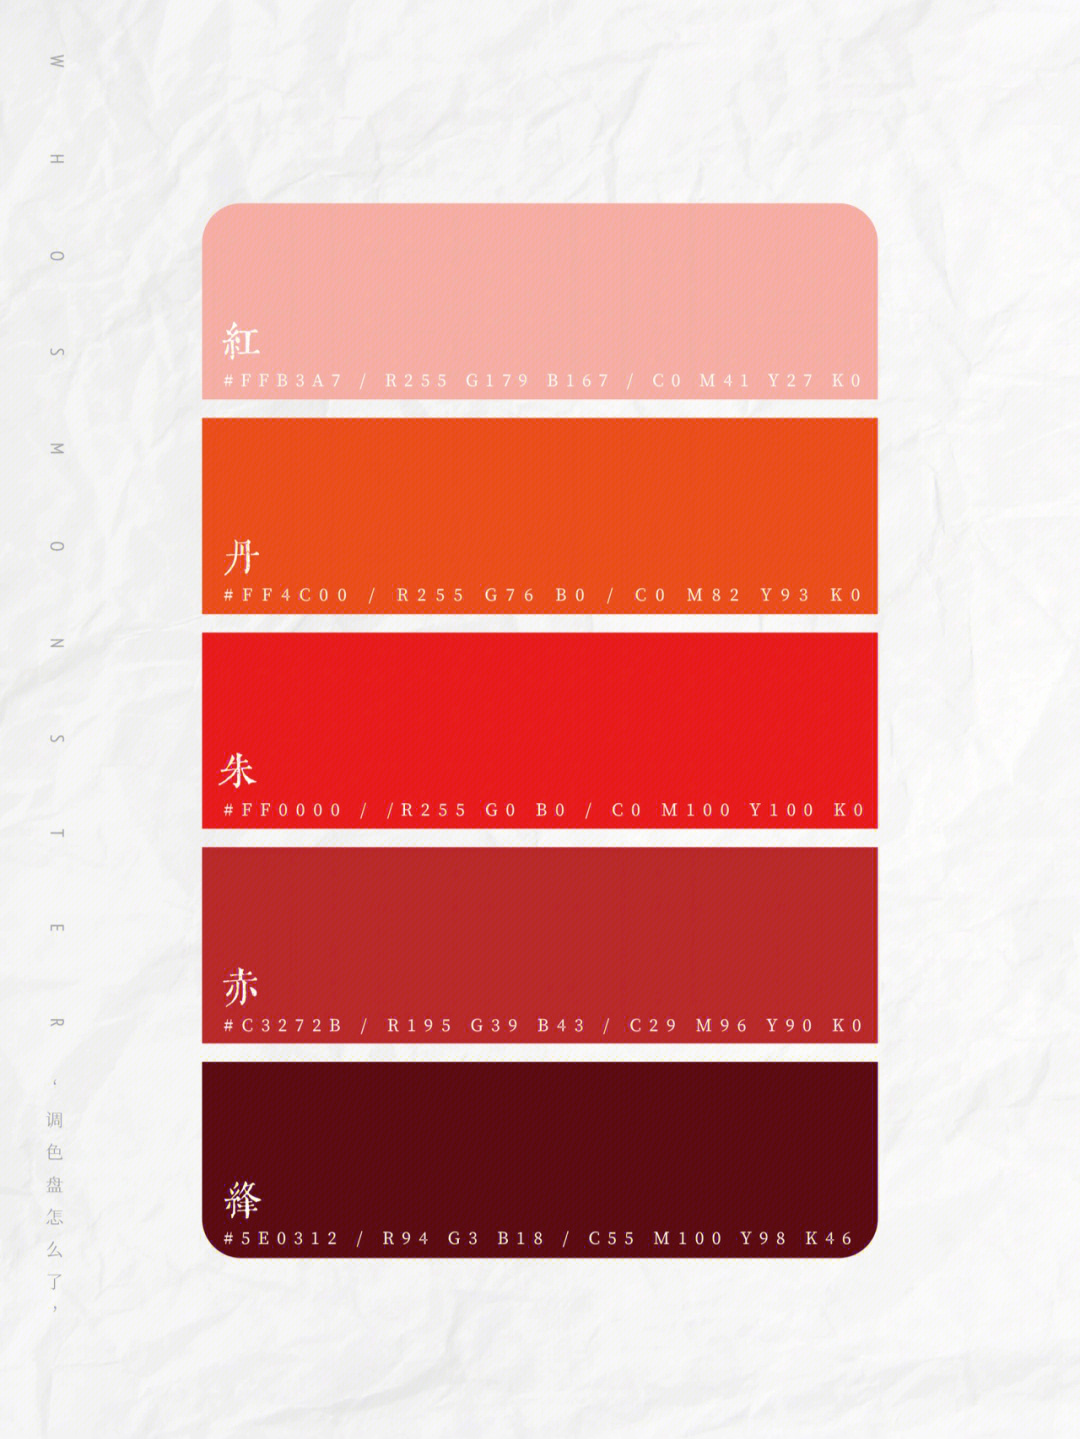 02传统色红色分:绛,赤,朱,丹,红,茜,彤,赭,绯9种颜色类别;